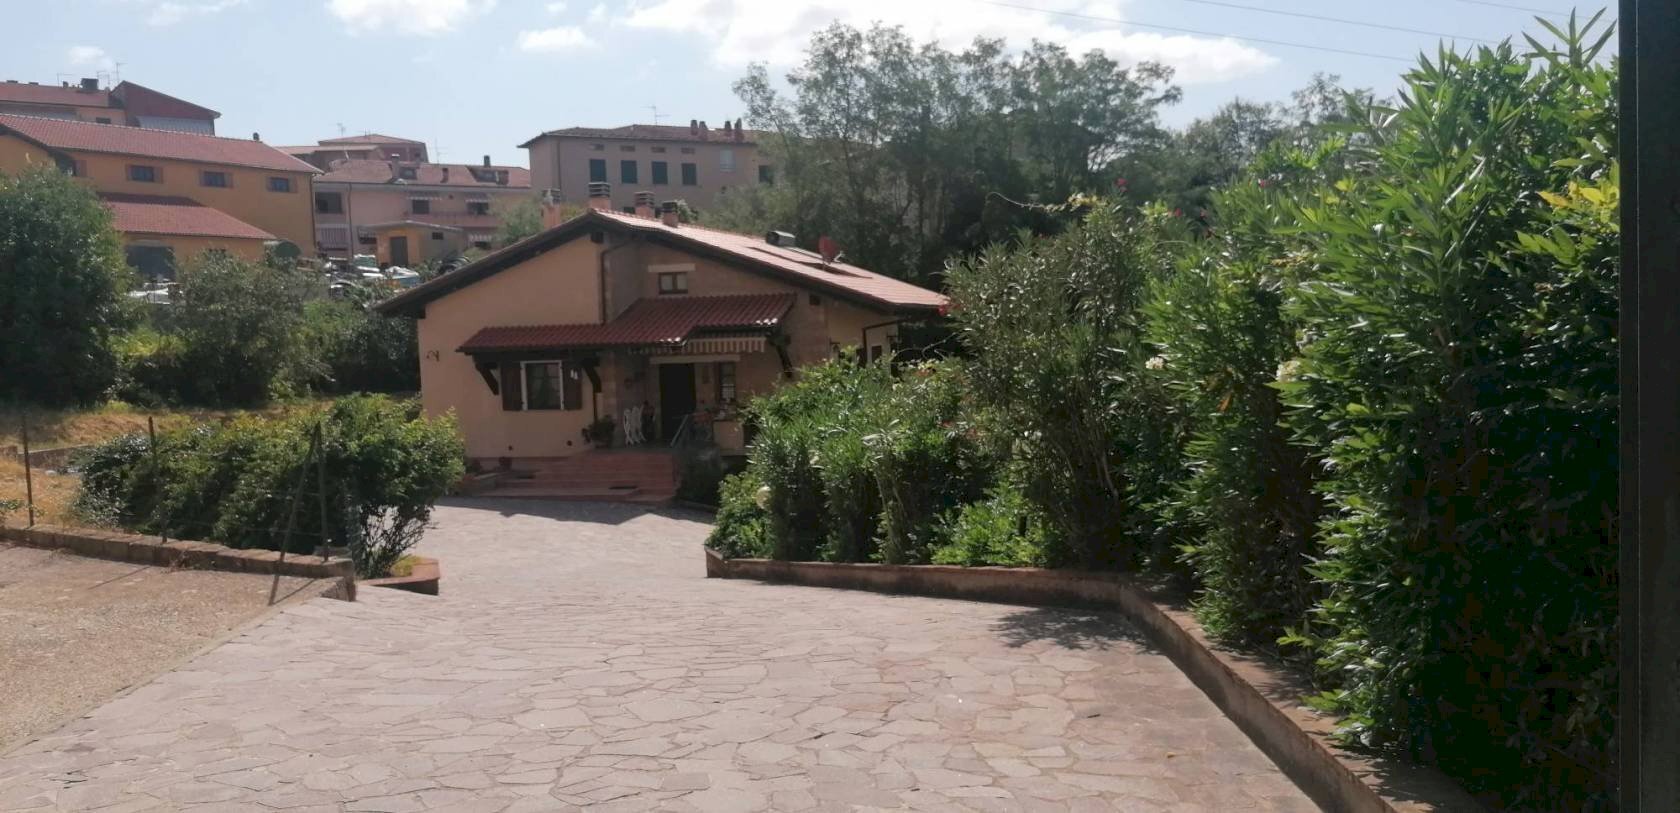 Villa in vendita a Manciano, 1 locali, prezzo € 465.000 | CambioCasa.it